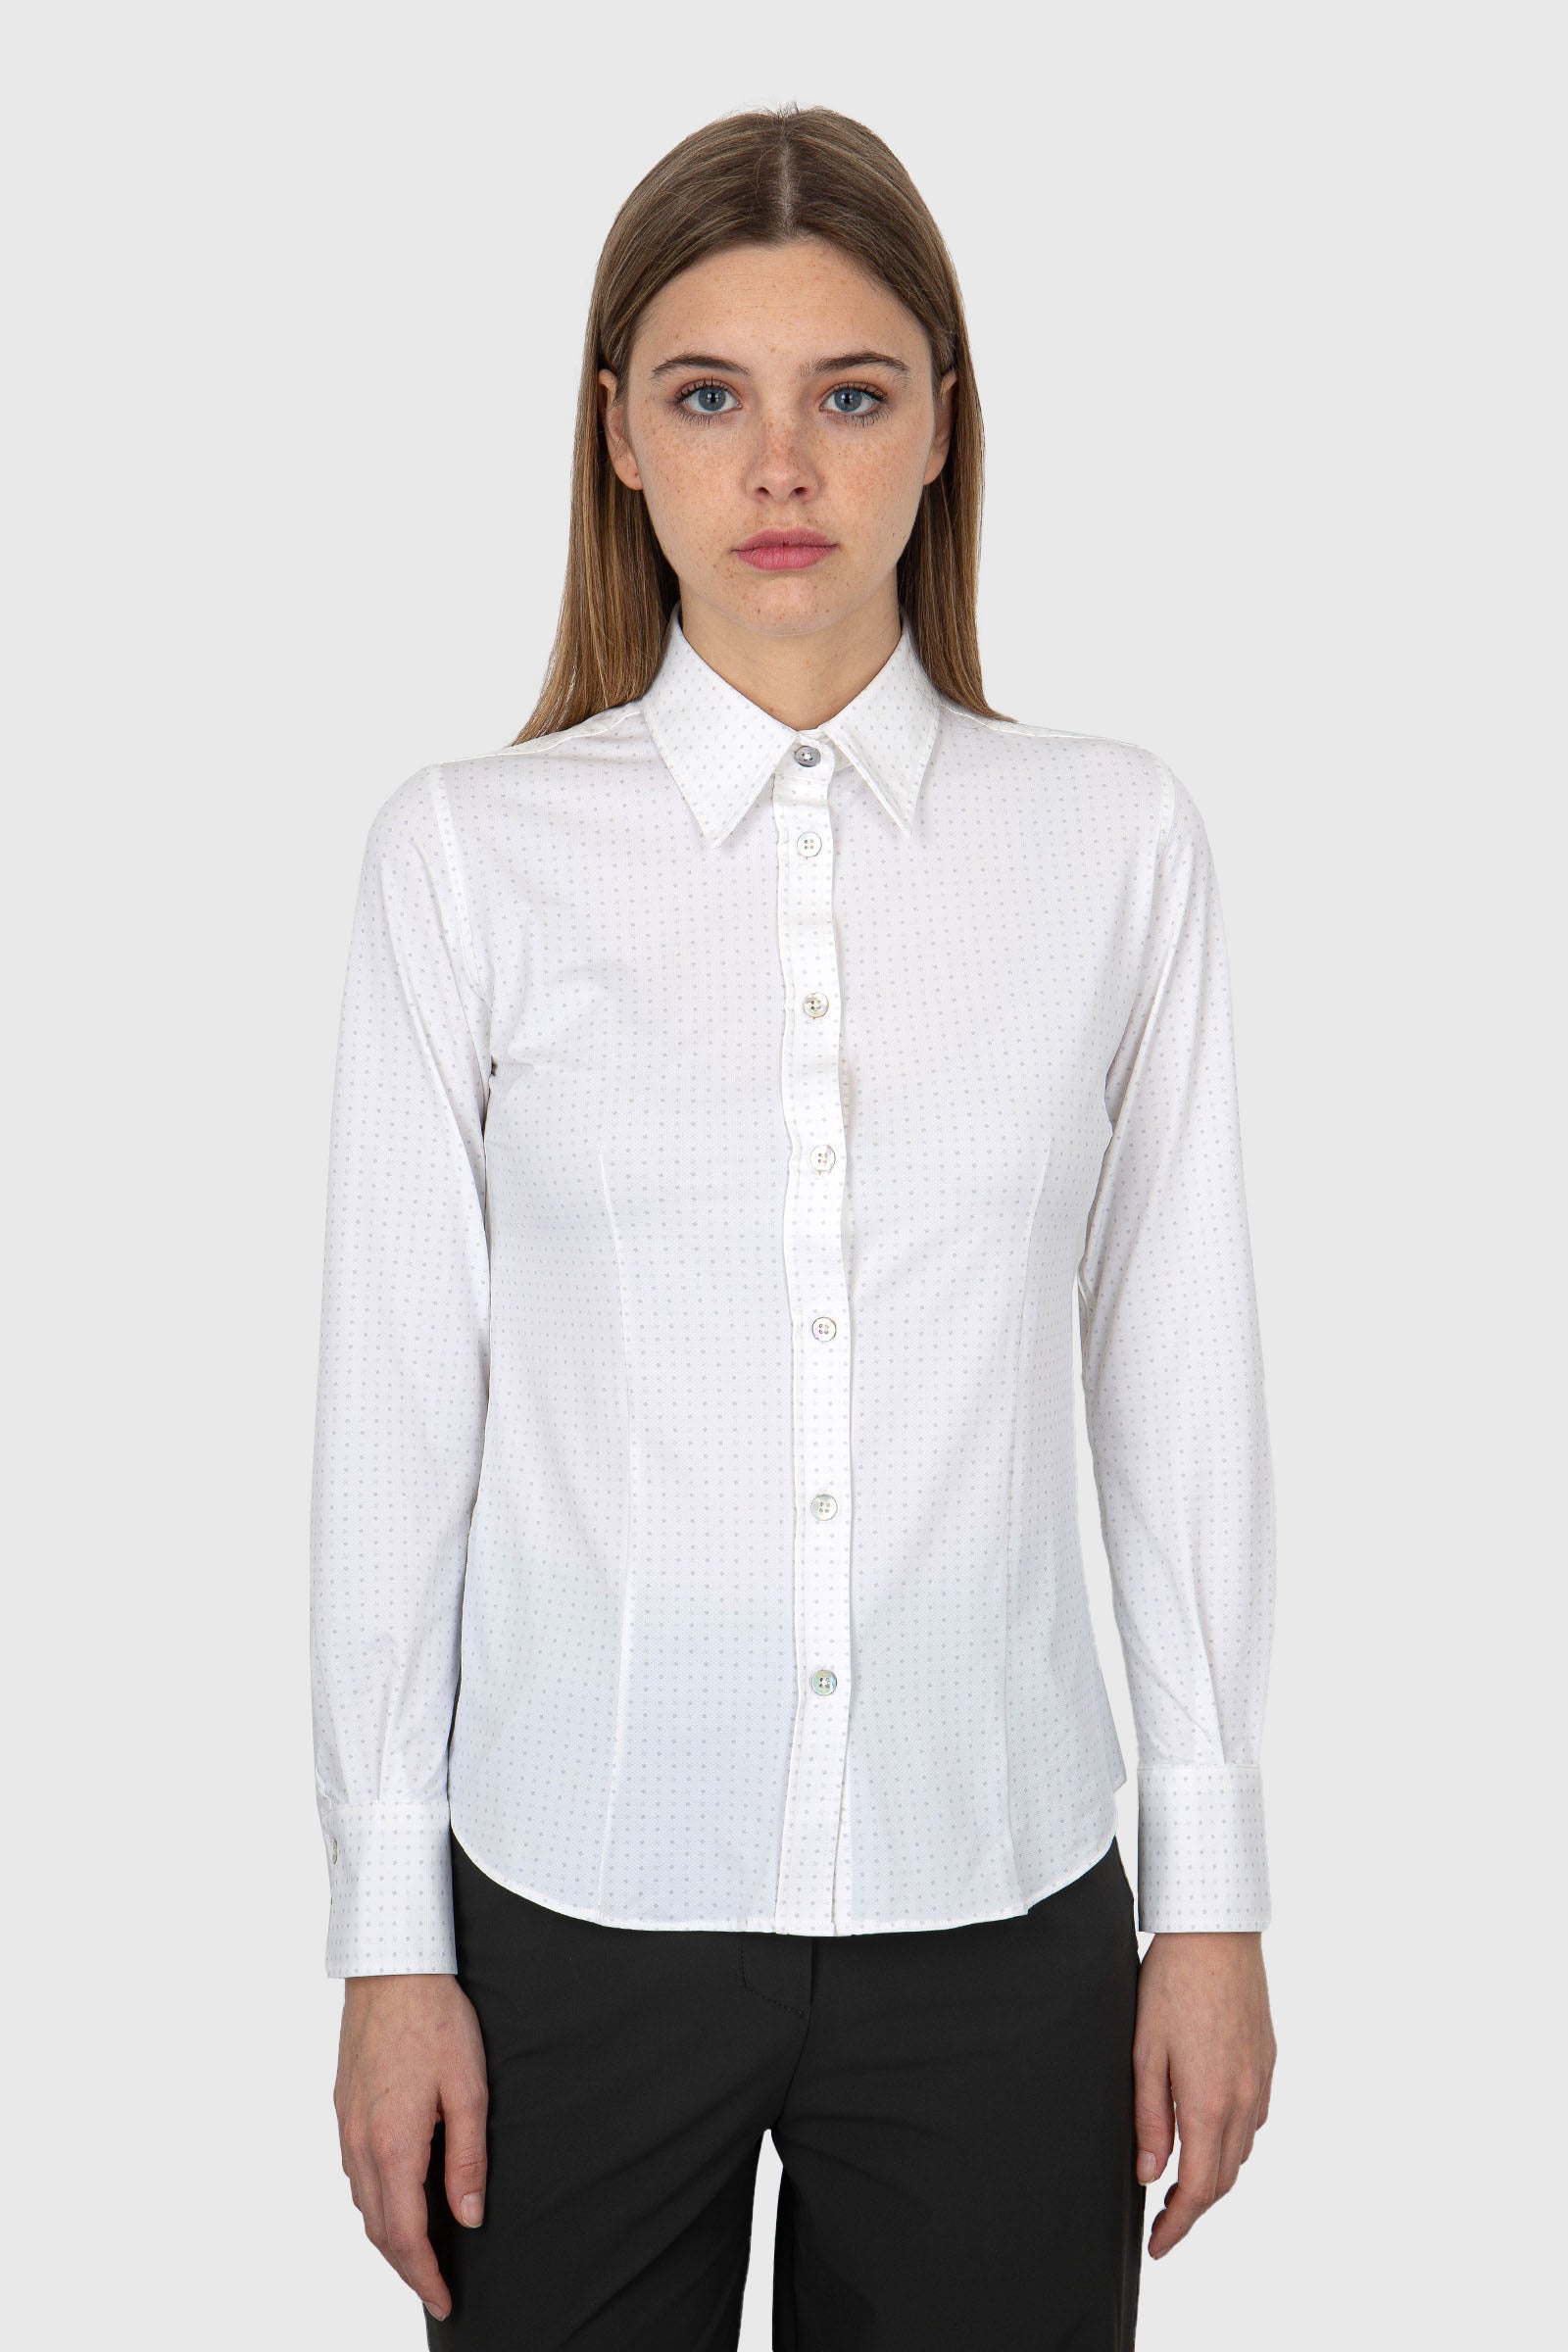 RRD Micro White Synthetic White Shirt - 5